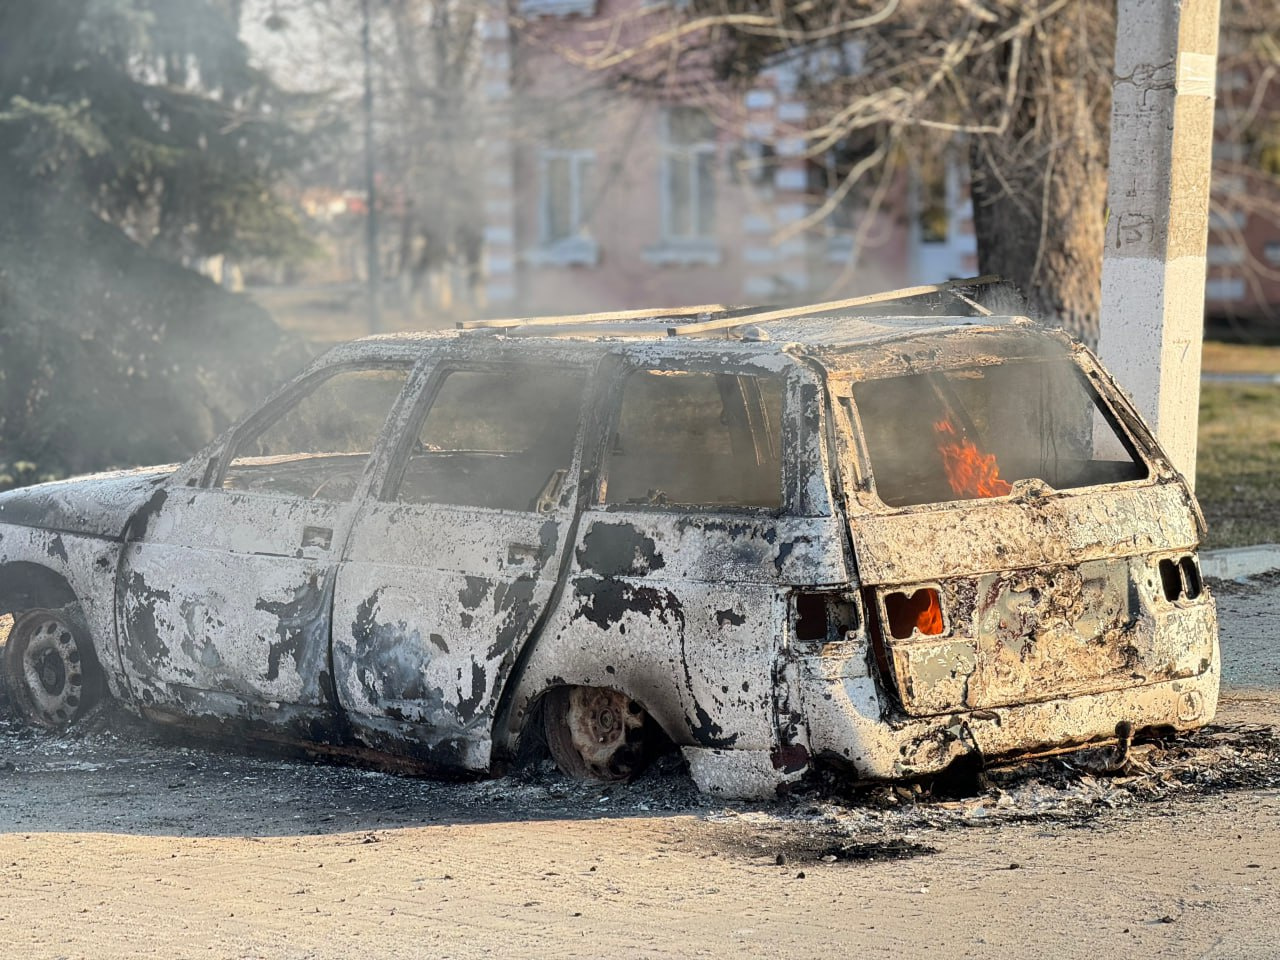 Фото из обстрелянного белгородского села, где пострадали пожарные. Ещё ранена женщина